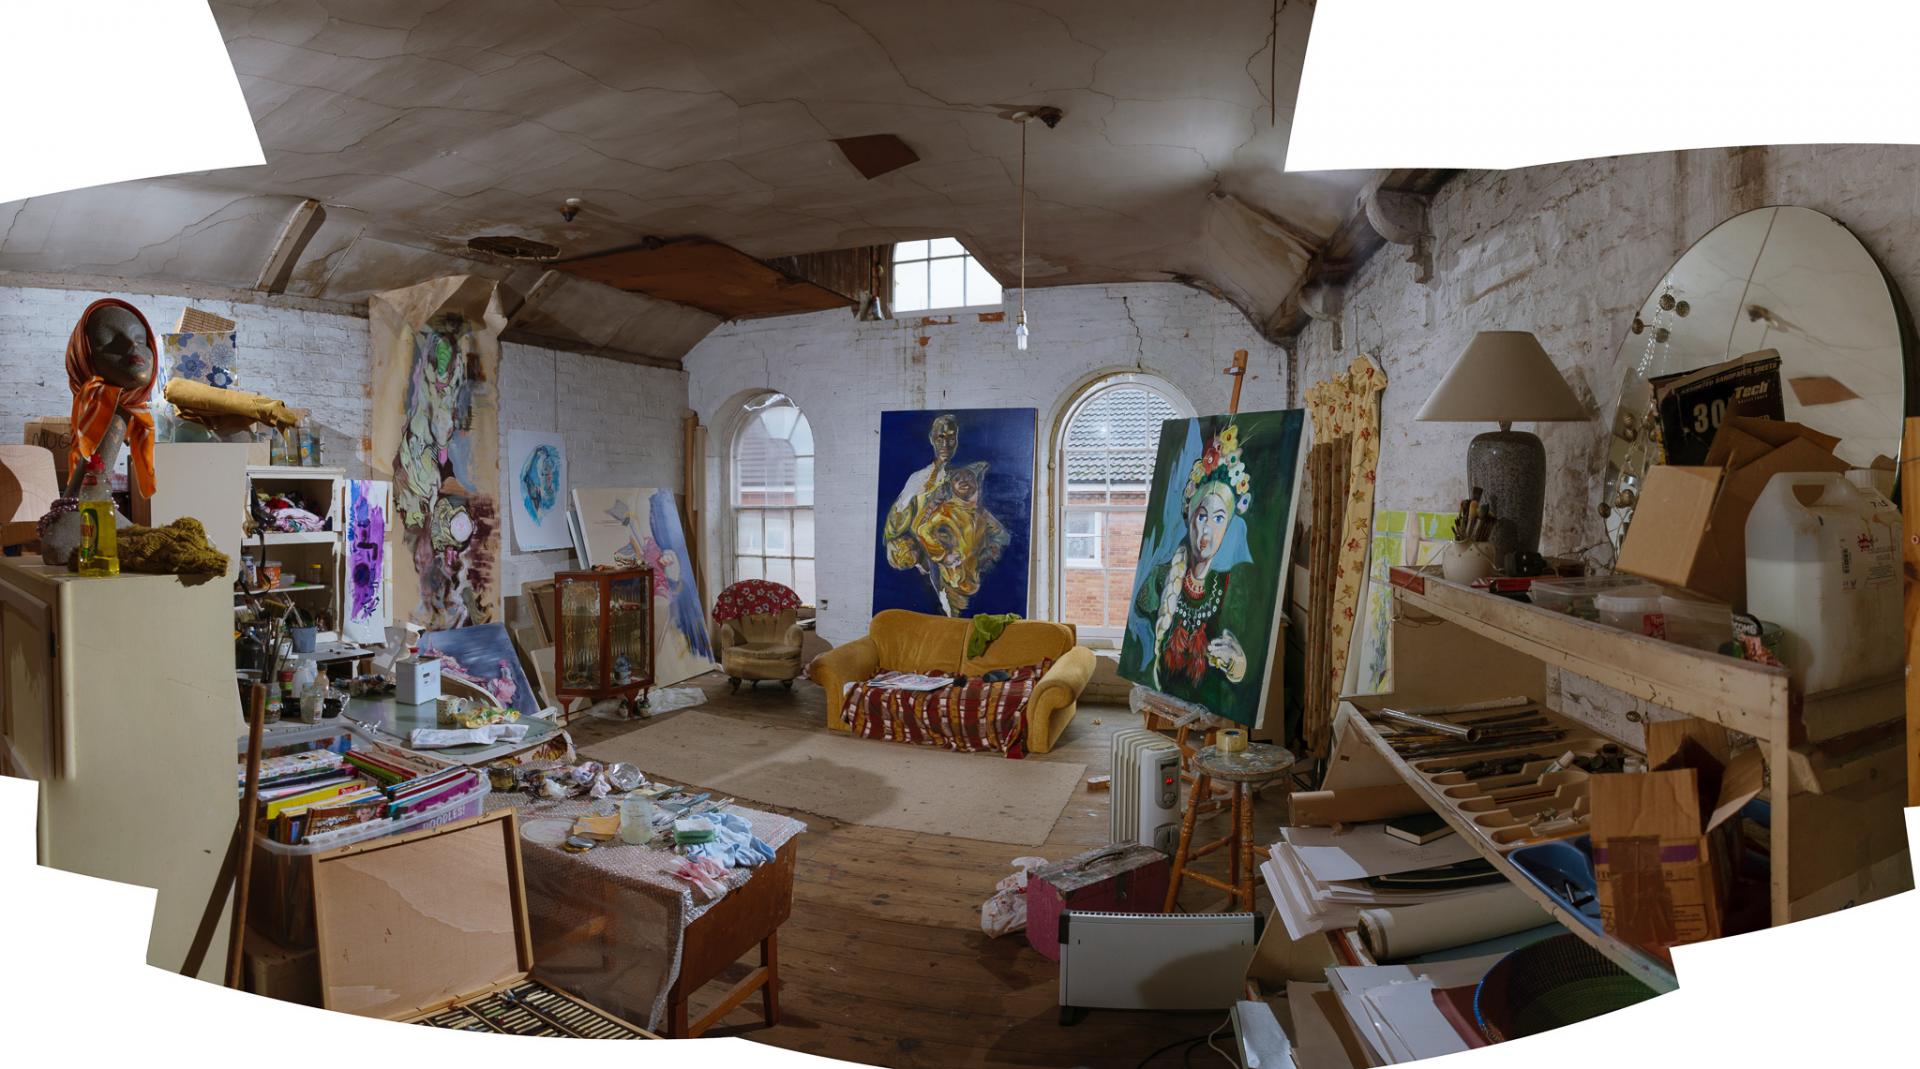 Jayne Cooper's studio.